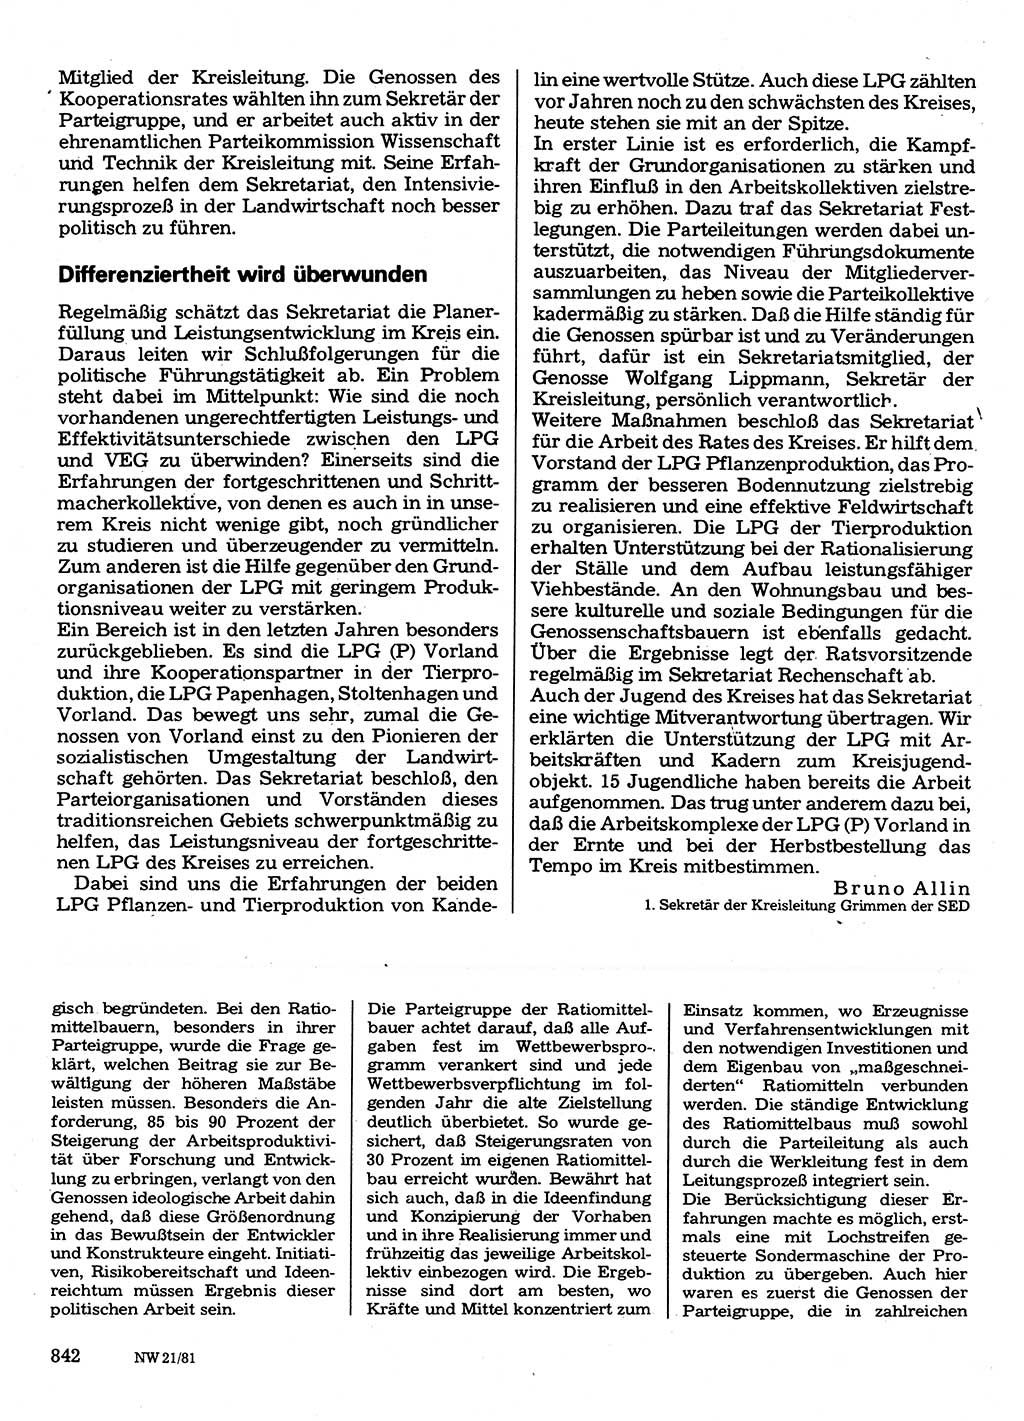 Neuer Weg (NW), Organ des Zentralkomitees (ZK) der SED (Sozialistische Einheitspartei Deutschlands) für Fragen des Parteilebens, 36. Jahrgang [Deutsche Demokratische Republik (DDR)] 1981, Seite 842 (NW ZK SED DDR 1981, S. 842)